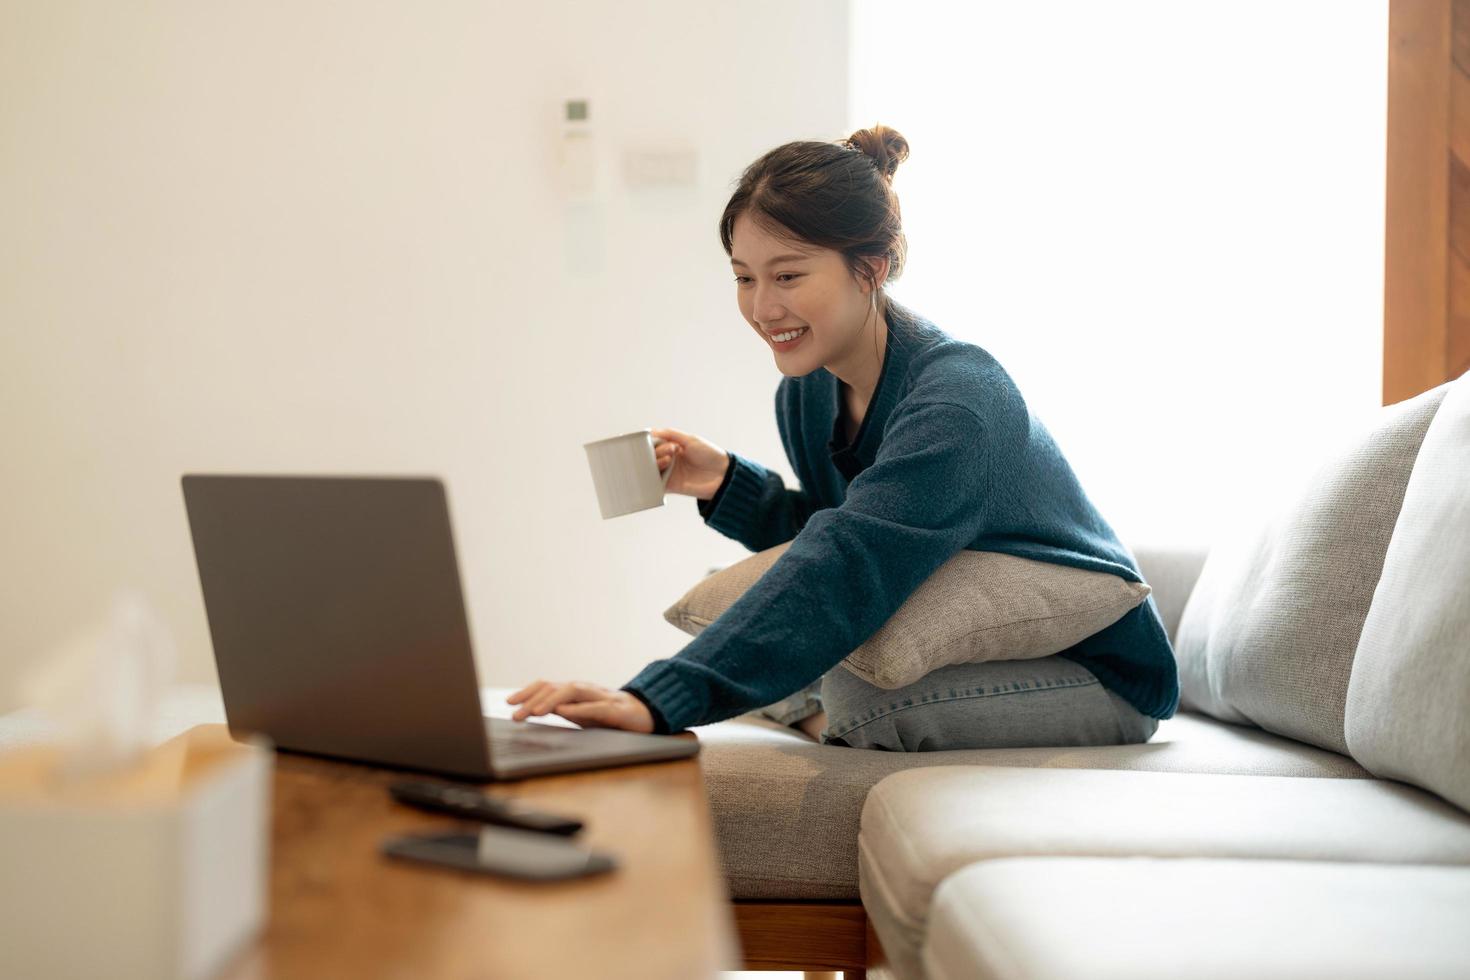 jeune femme asiatique calme travaillant sur un ordinateur portable assise sur un canapé confortable, une fille heureuse naviguant sur Internet ou faisant des achats en ligne pendant le week-end ensoleillé à la maison, se relaxant sur un canapé avec un ordinateur photo